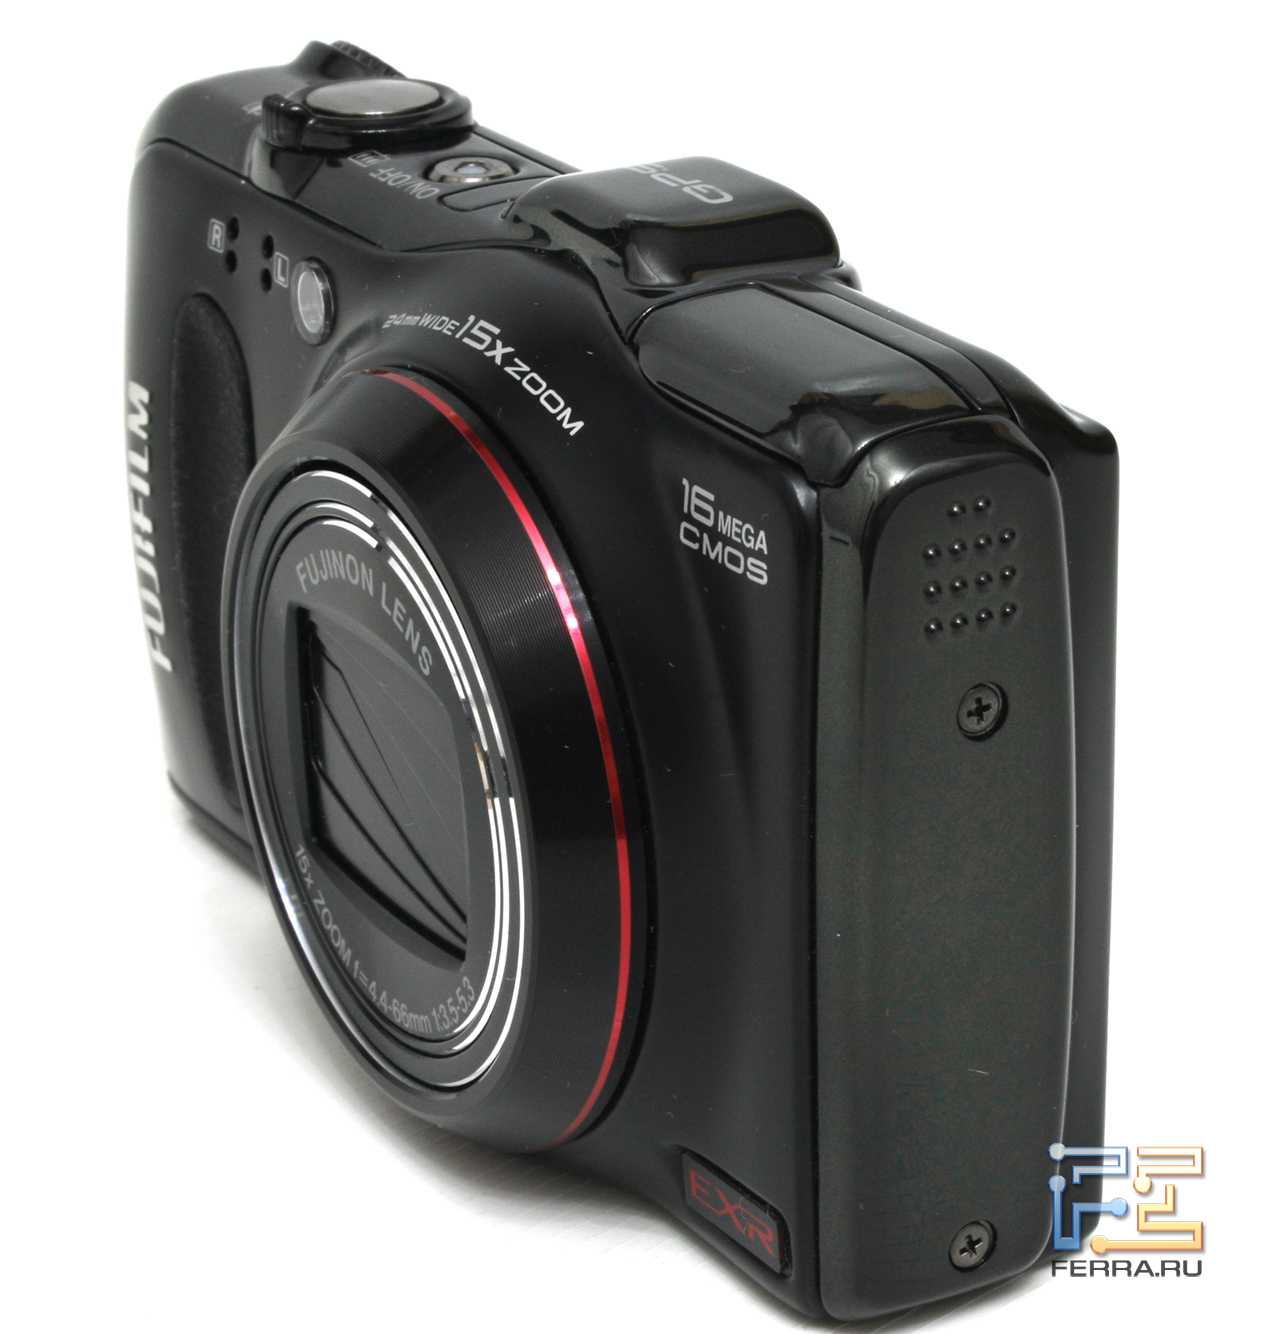 Fujifilm finepix f550exr - купить , скидки, цена, отзывы, обзор, характеристики - фотоаппараты цифровые